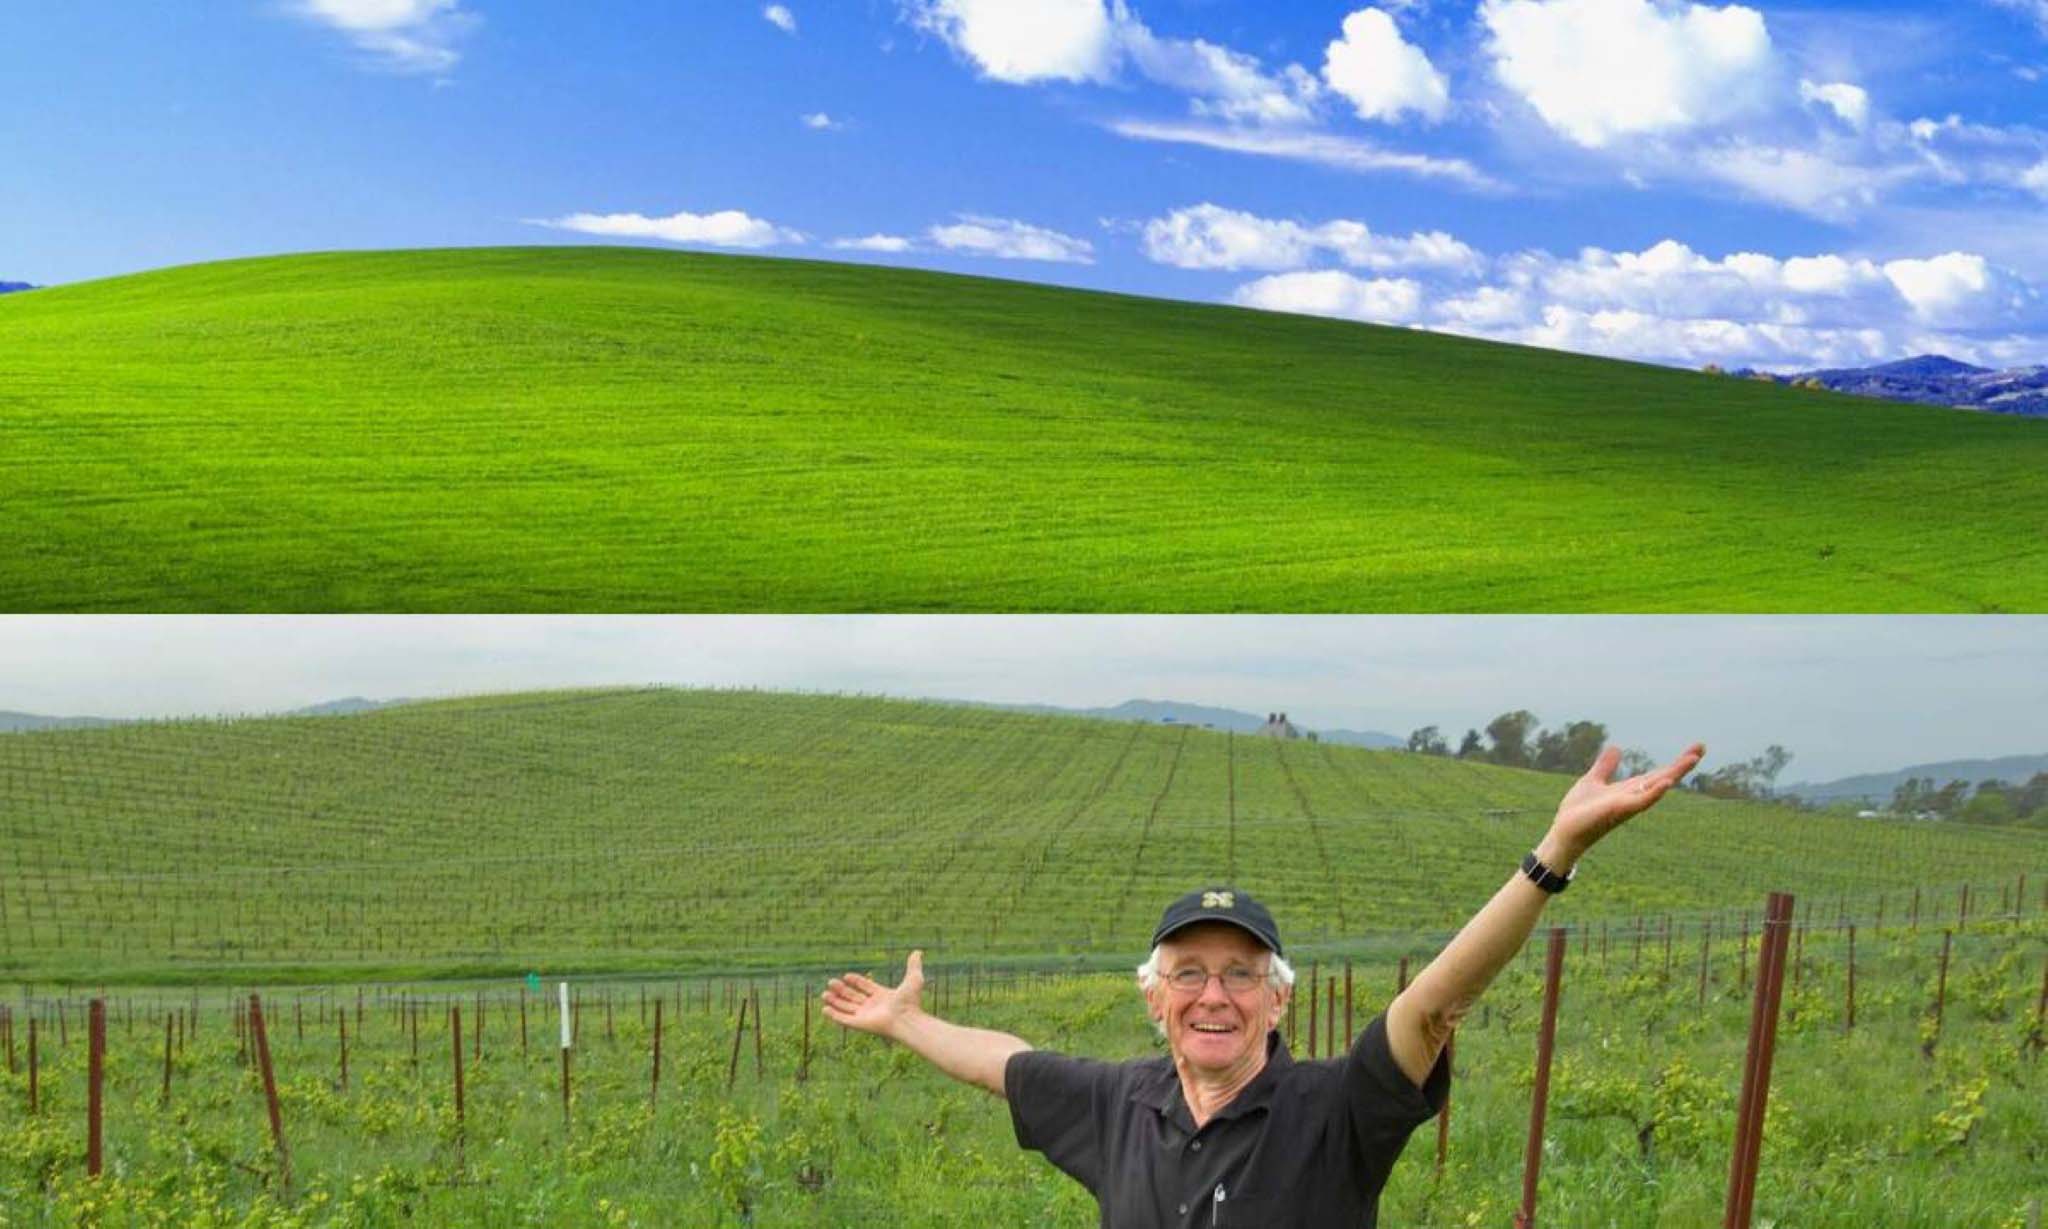 Hãy nhìn vào đồi Bliss trên hình nền Windows XP, bạn sẽ cảm nhận được sự thanh bình, yên tĩnh và tĩnh lặng. Hãy tìm hiểu thêm về lịch sử và giá trị của hình nền này, và khám phá những bức ảnh đẹp nhất liên quan đến đồi Bliss ngay hôm nay!